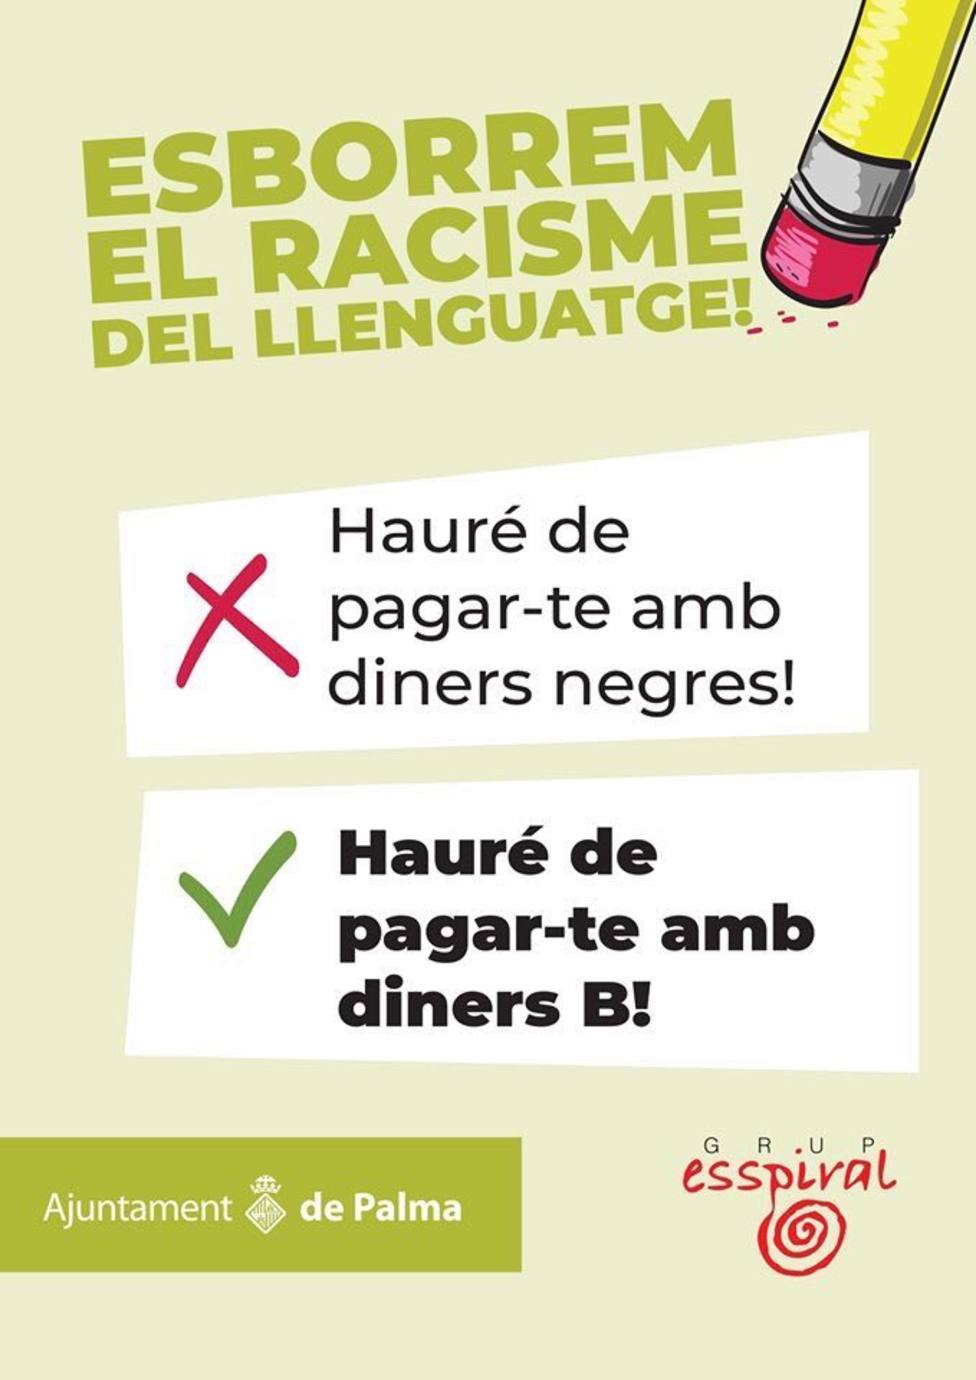 Cort pide el reintegro de la subvención de la campaña Esborrem el racisme del llenguatge